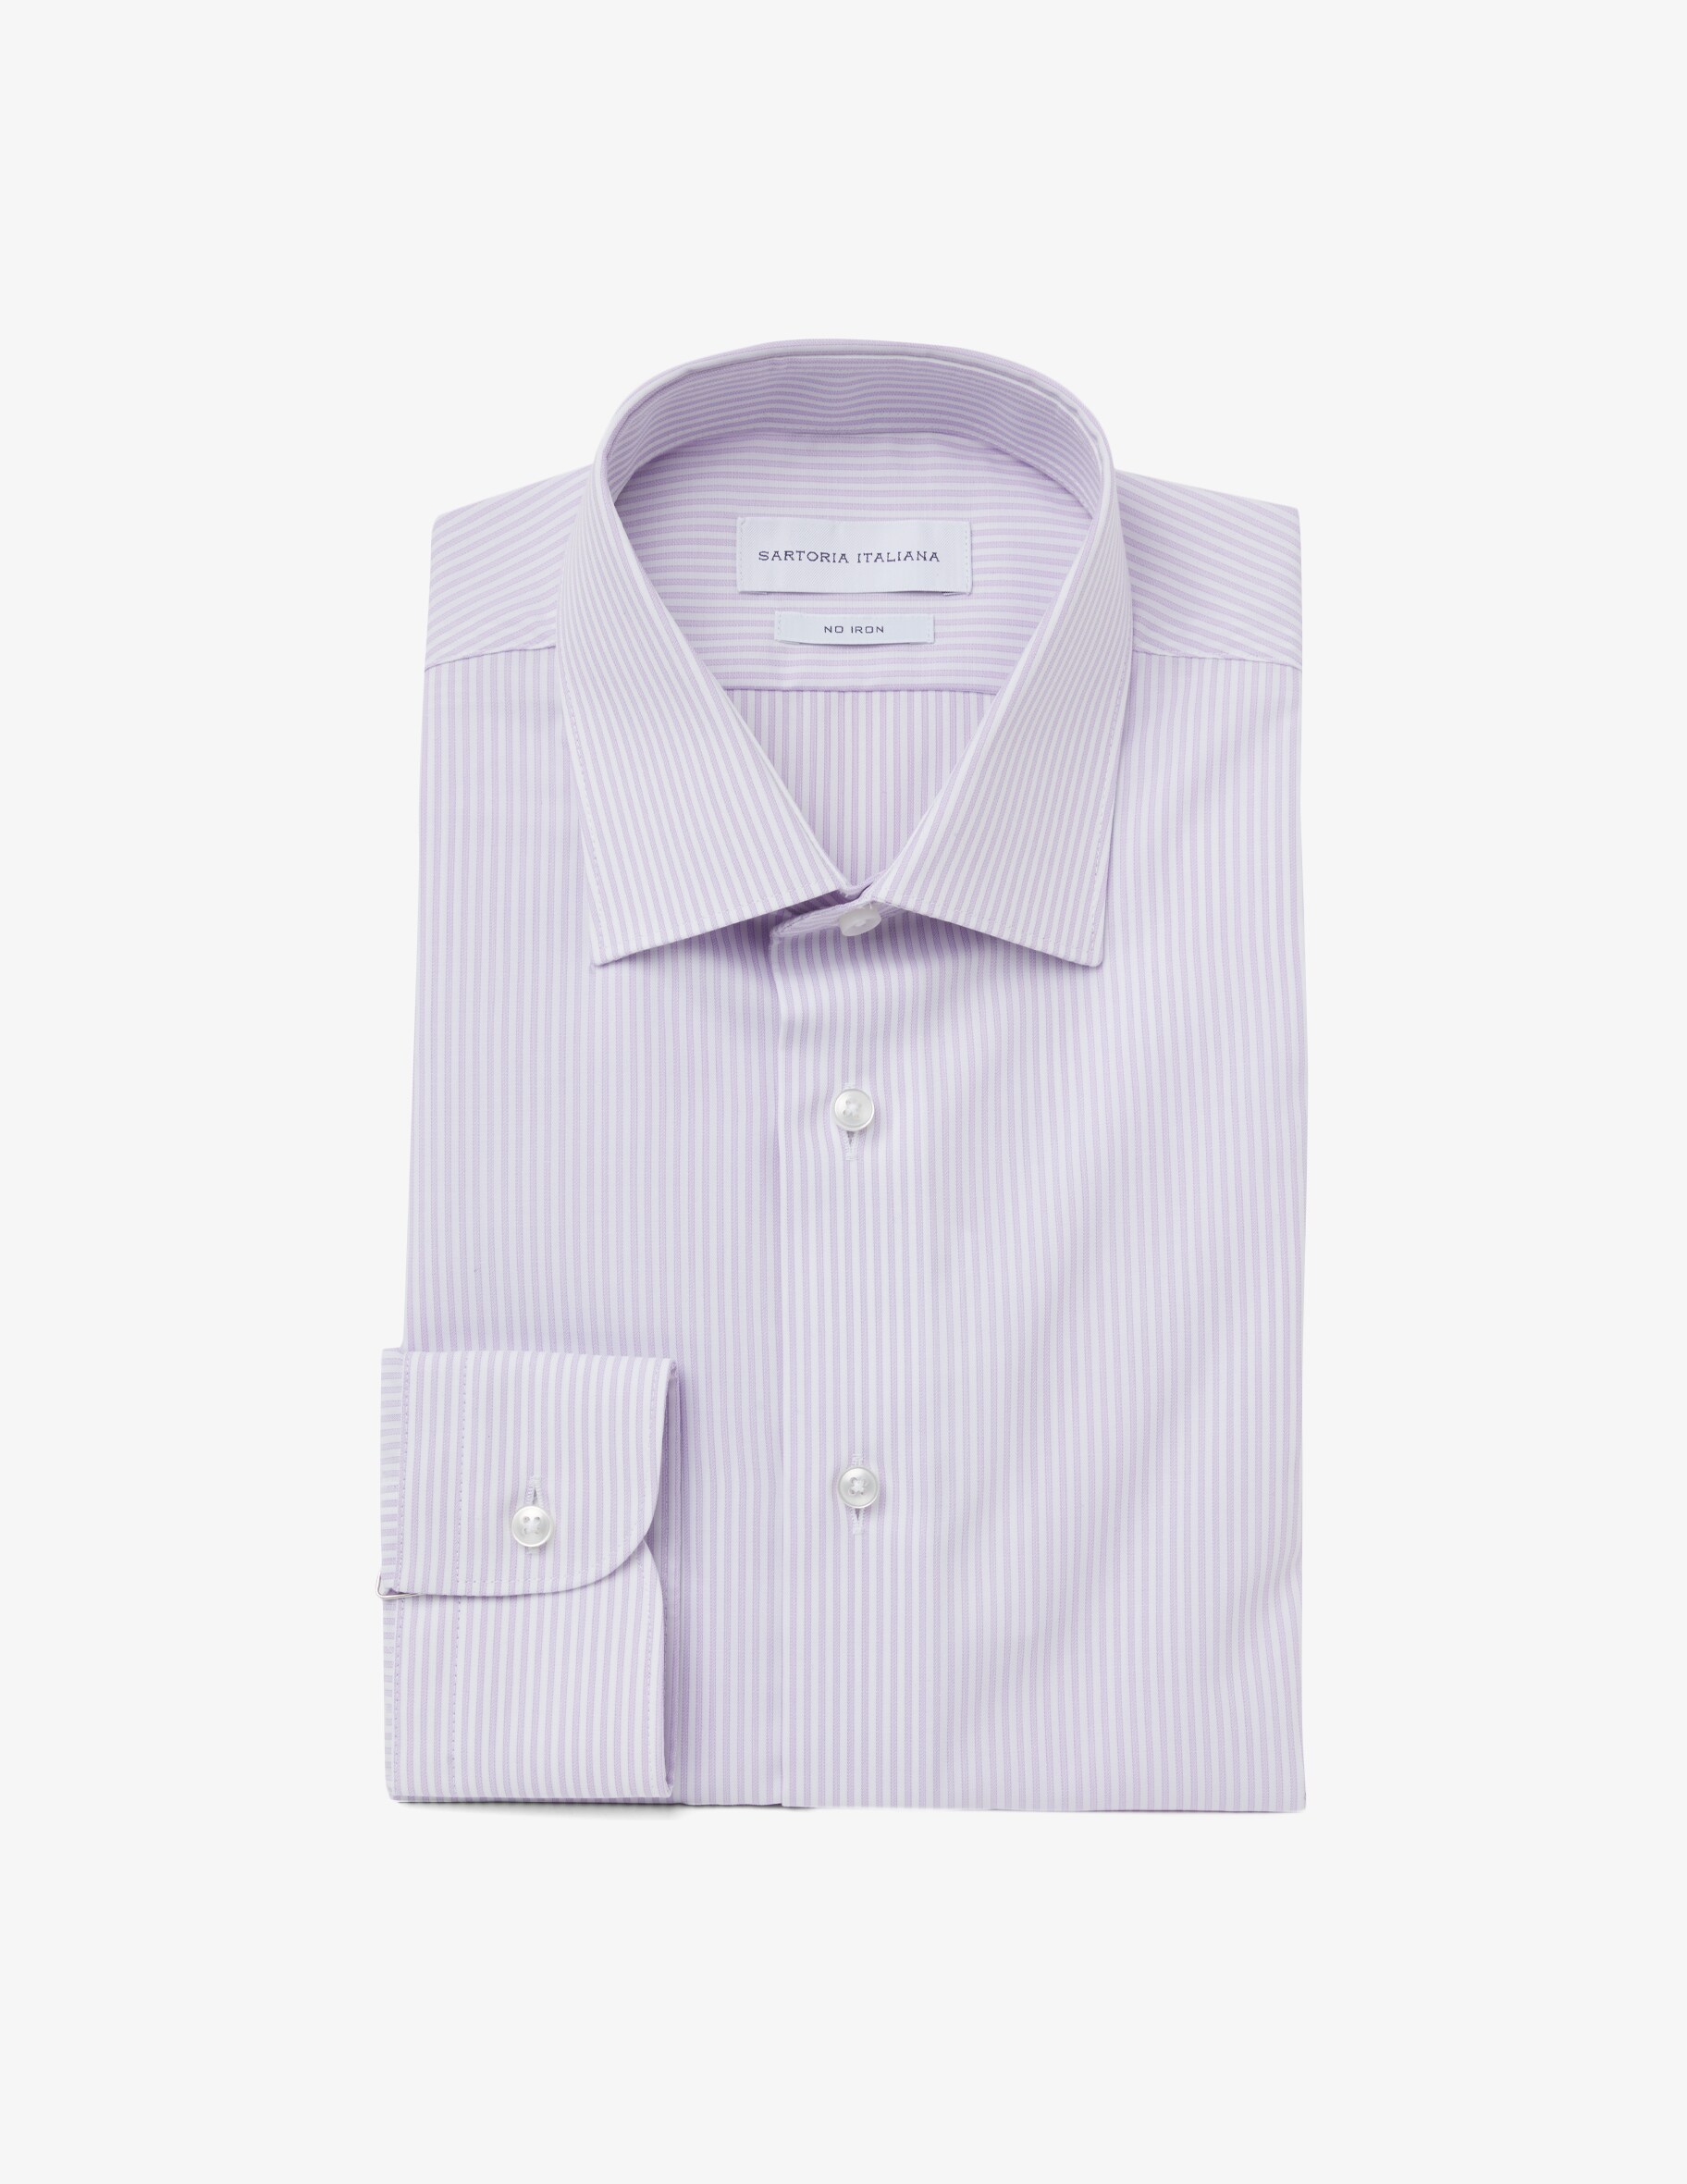 Рубашка современная на основе твила без утюга Sartoria Italiana, фиолетовый